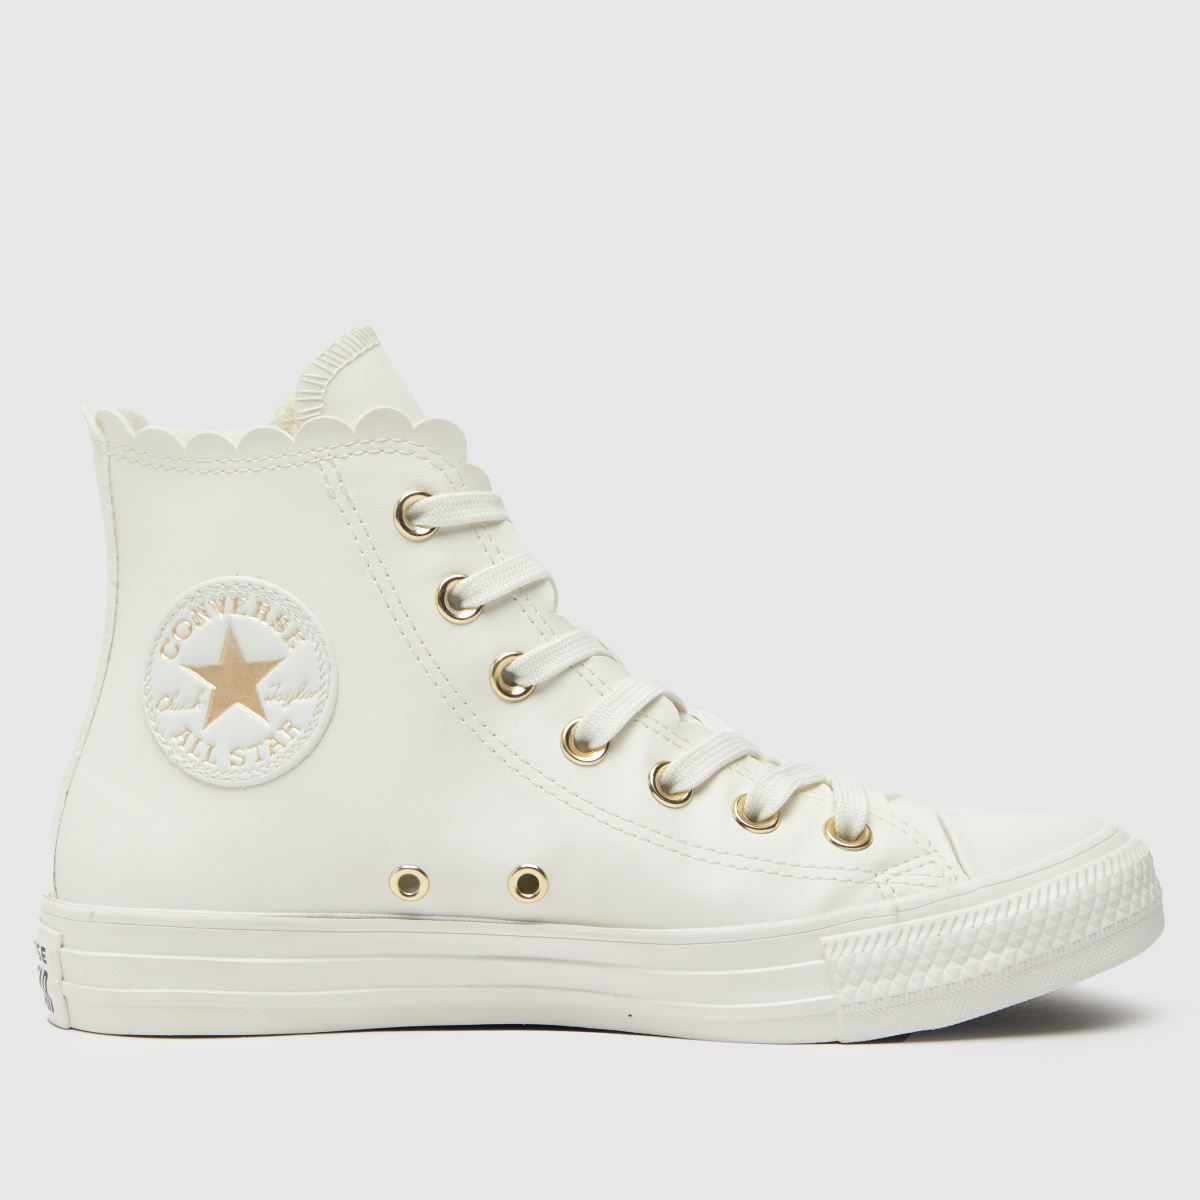 Converse all star hi in white & gold | Schuh